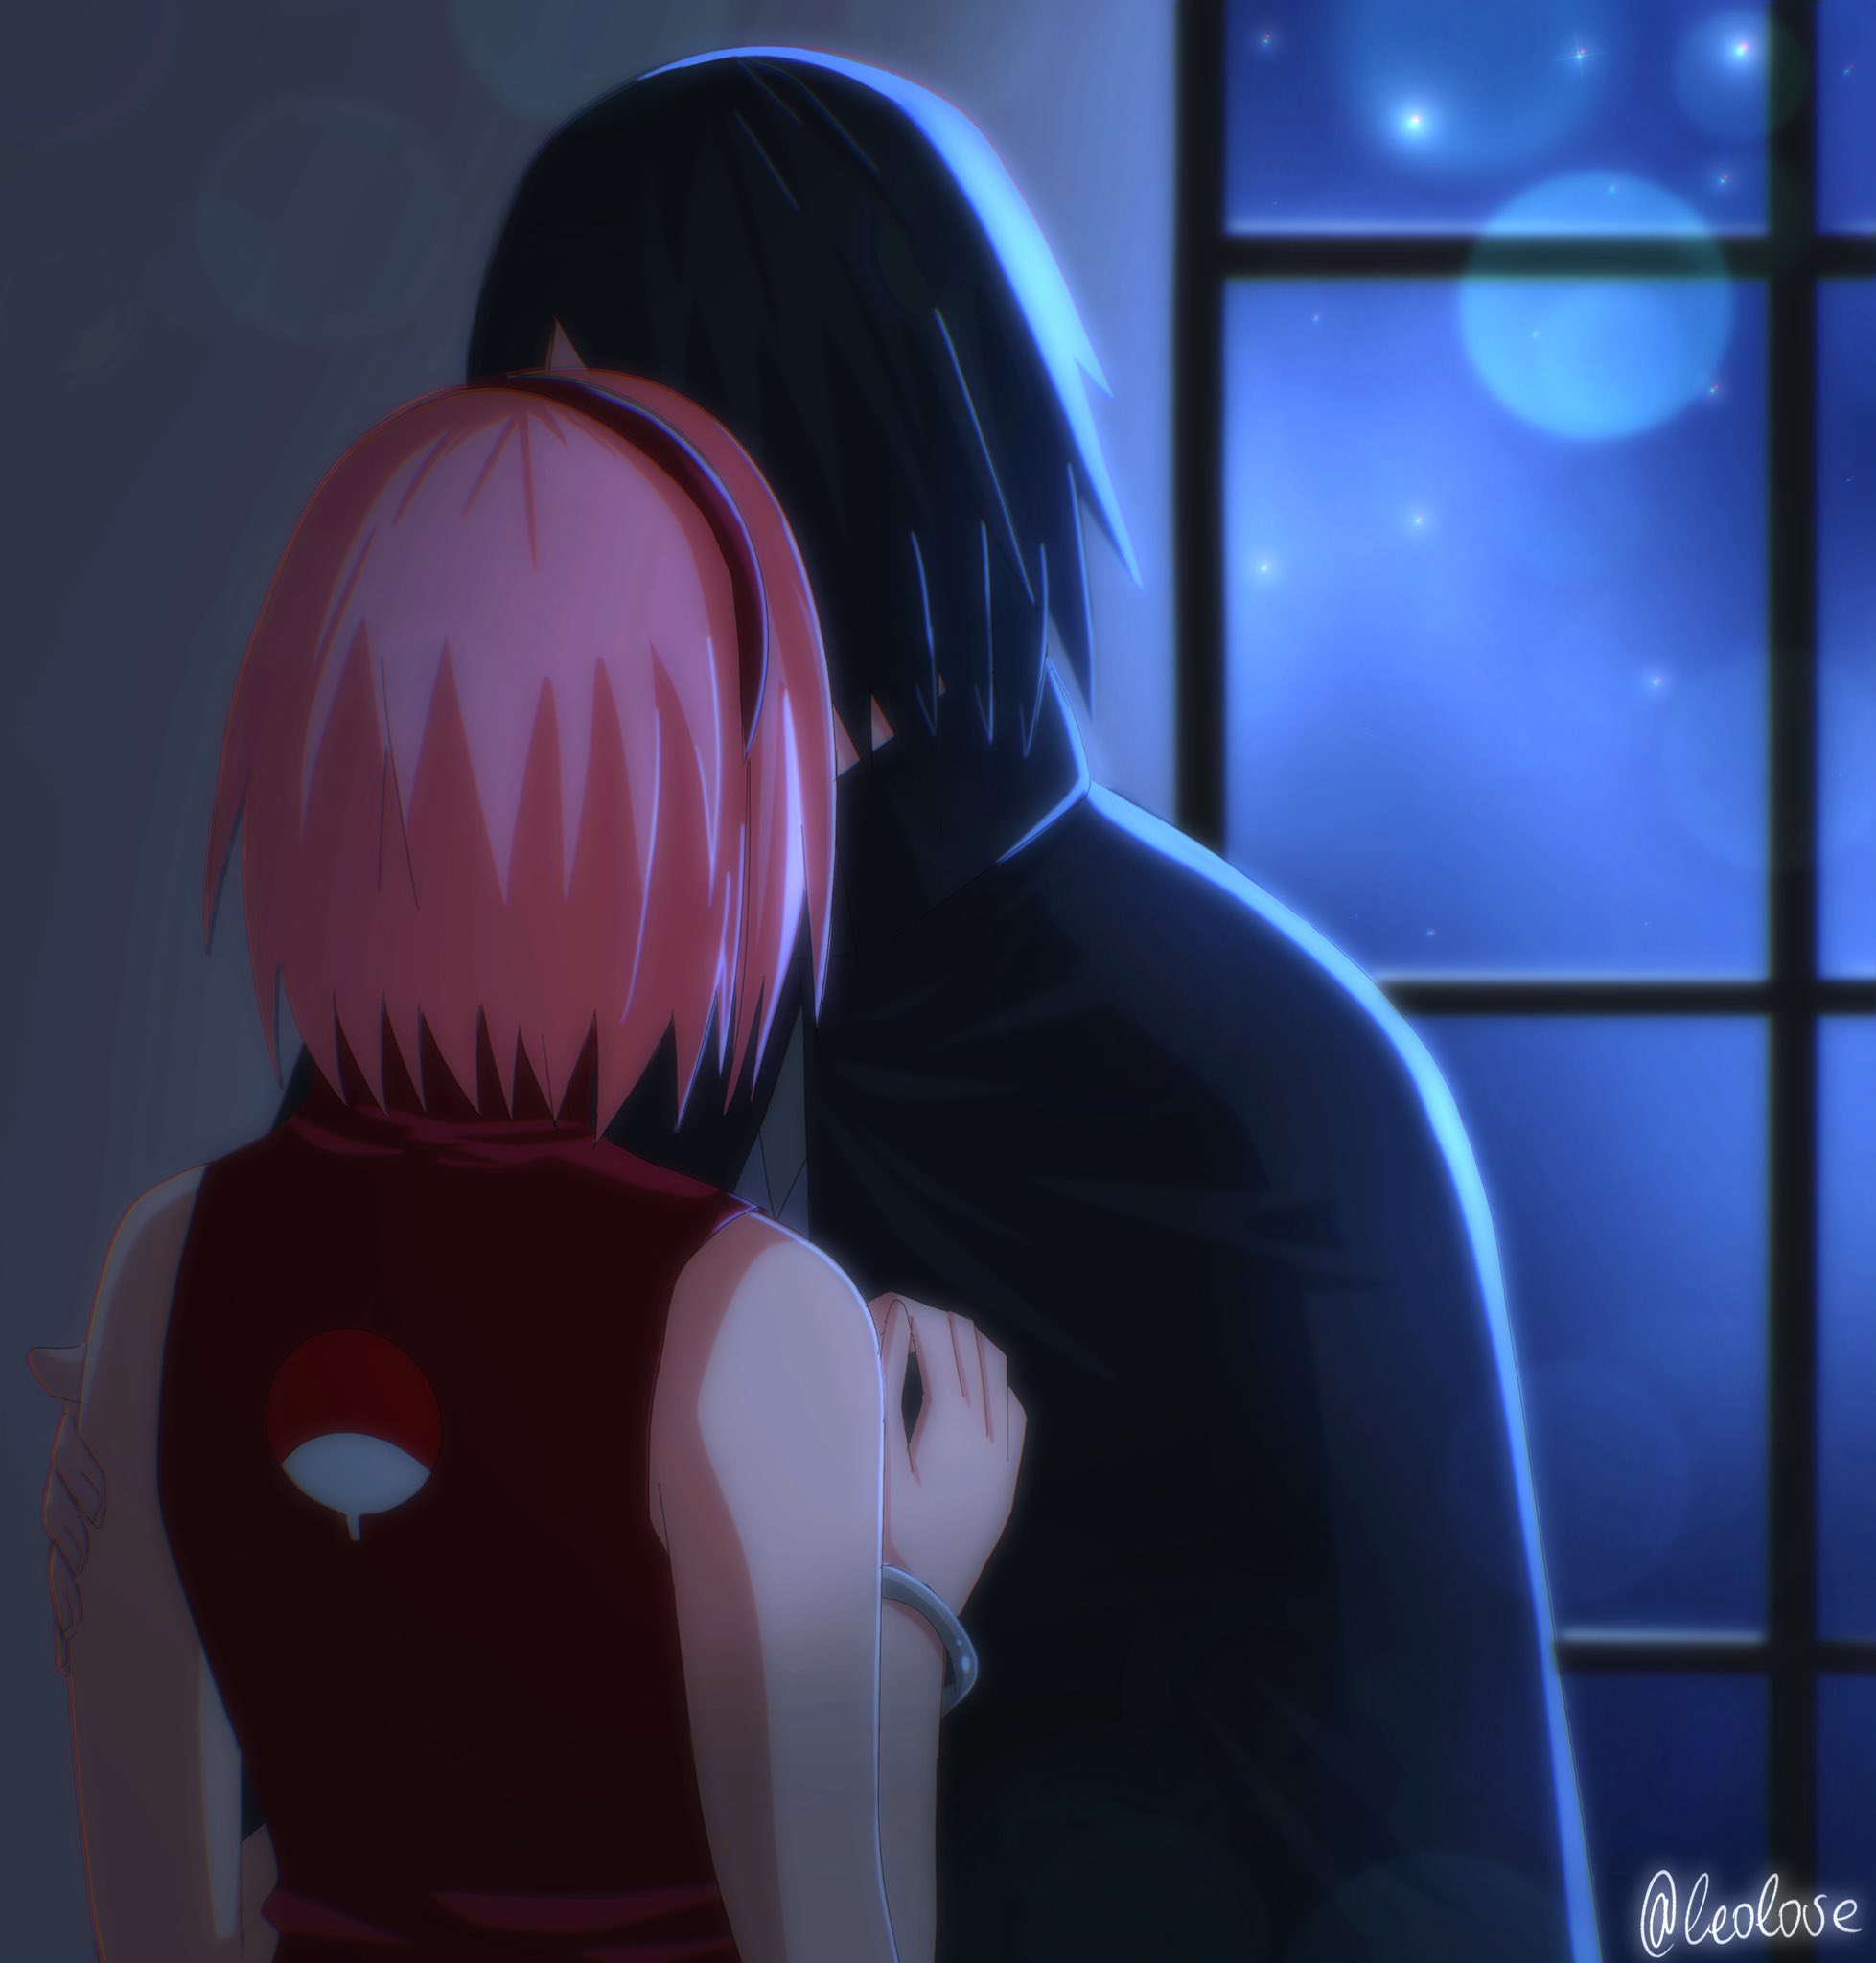 Sasuke and Sakura】 Love of life - BiliBili